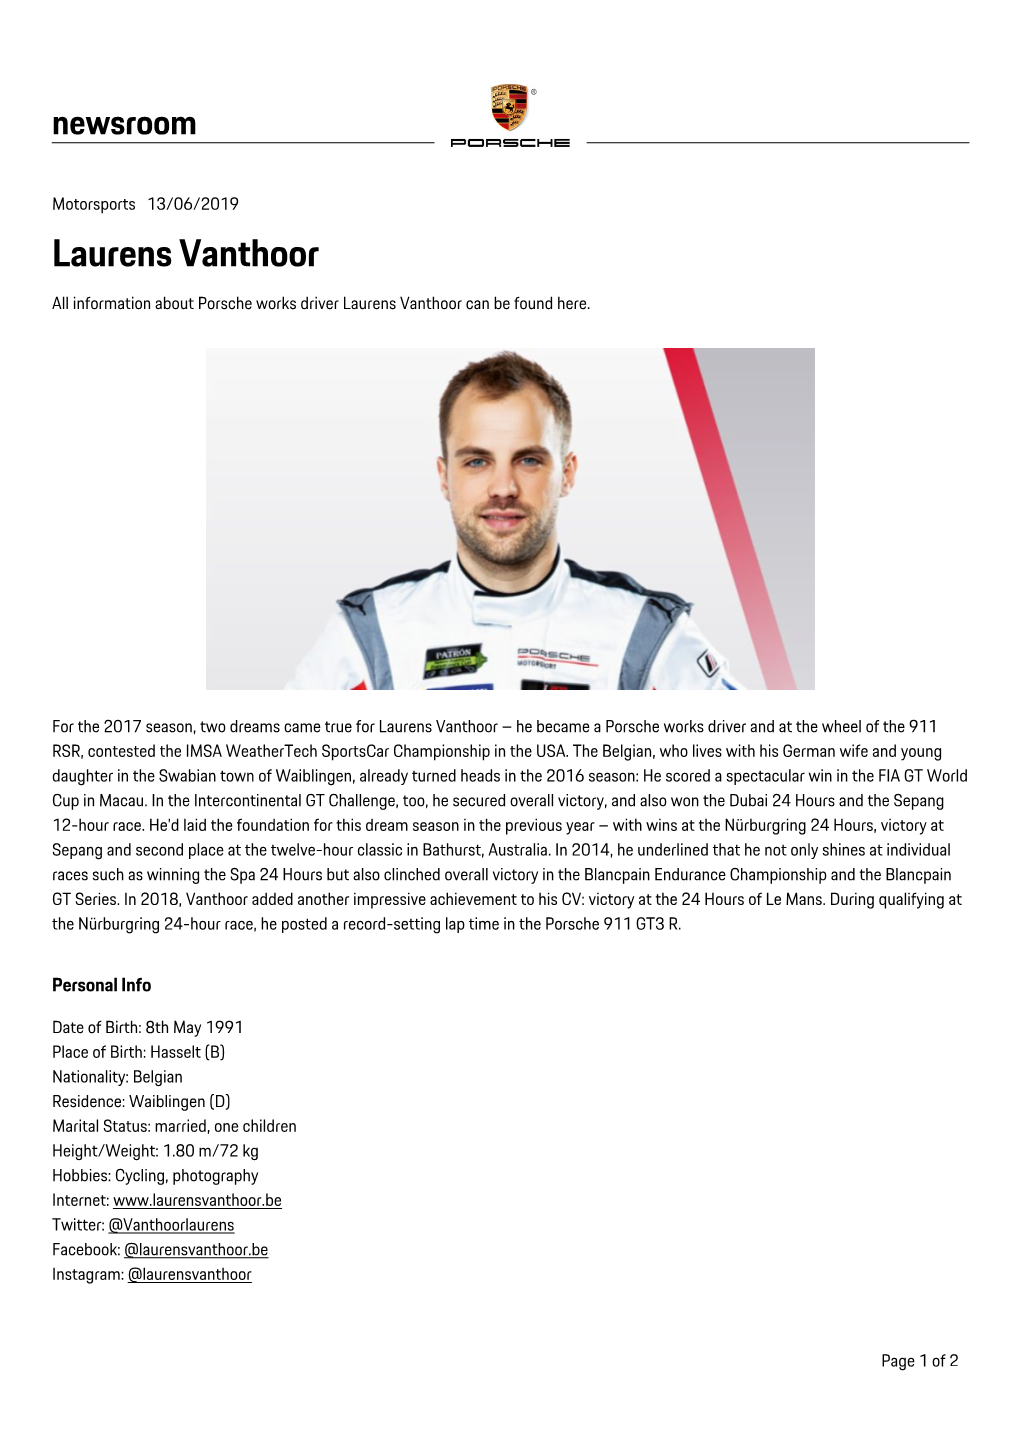 Laurens Vanthoor All Information About Porsche Works Driver Laurens Vanthoor Can Be Found Here